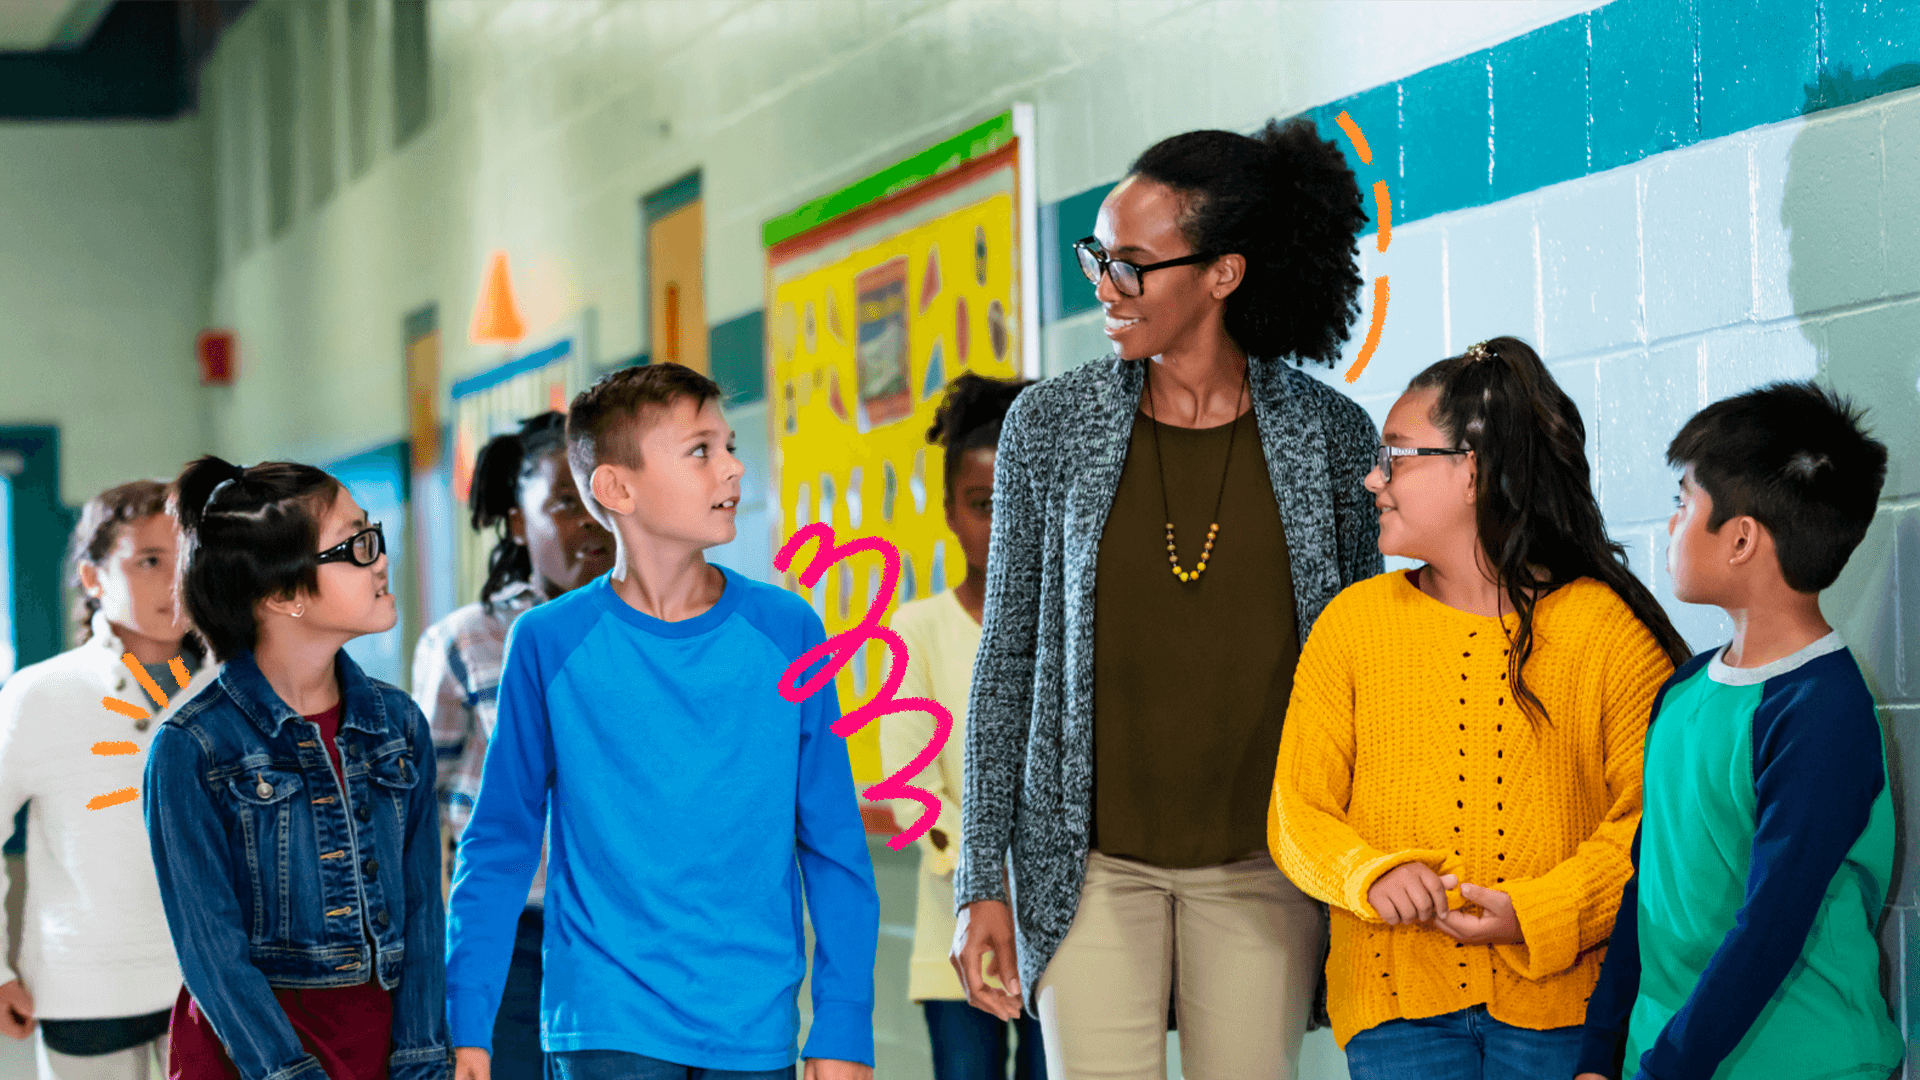 Imagem de capa da notícia sobre as medidas do MEC contra o racismo nas escolas mostra uma mulher negra, de cabelos cacheados e óculos representando uma professora, ao lado de algumas crianças no corredor de uma escola.